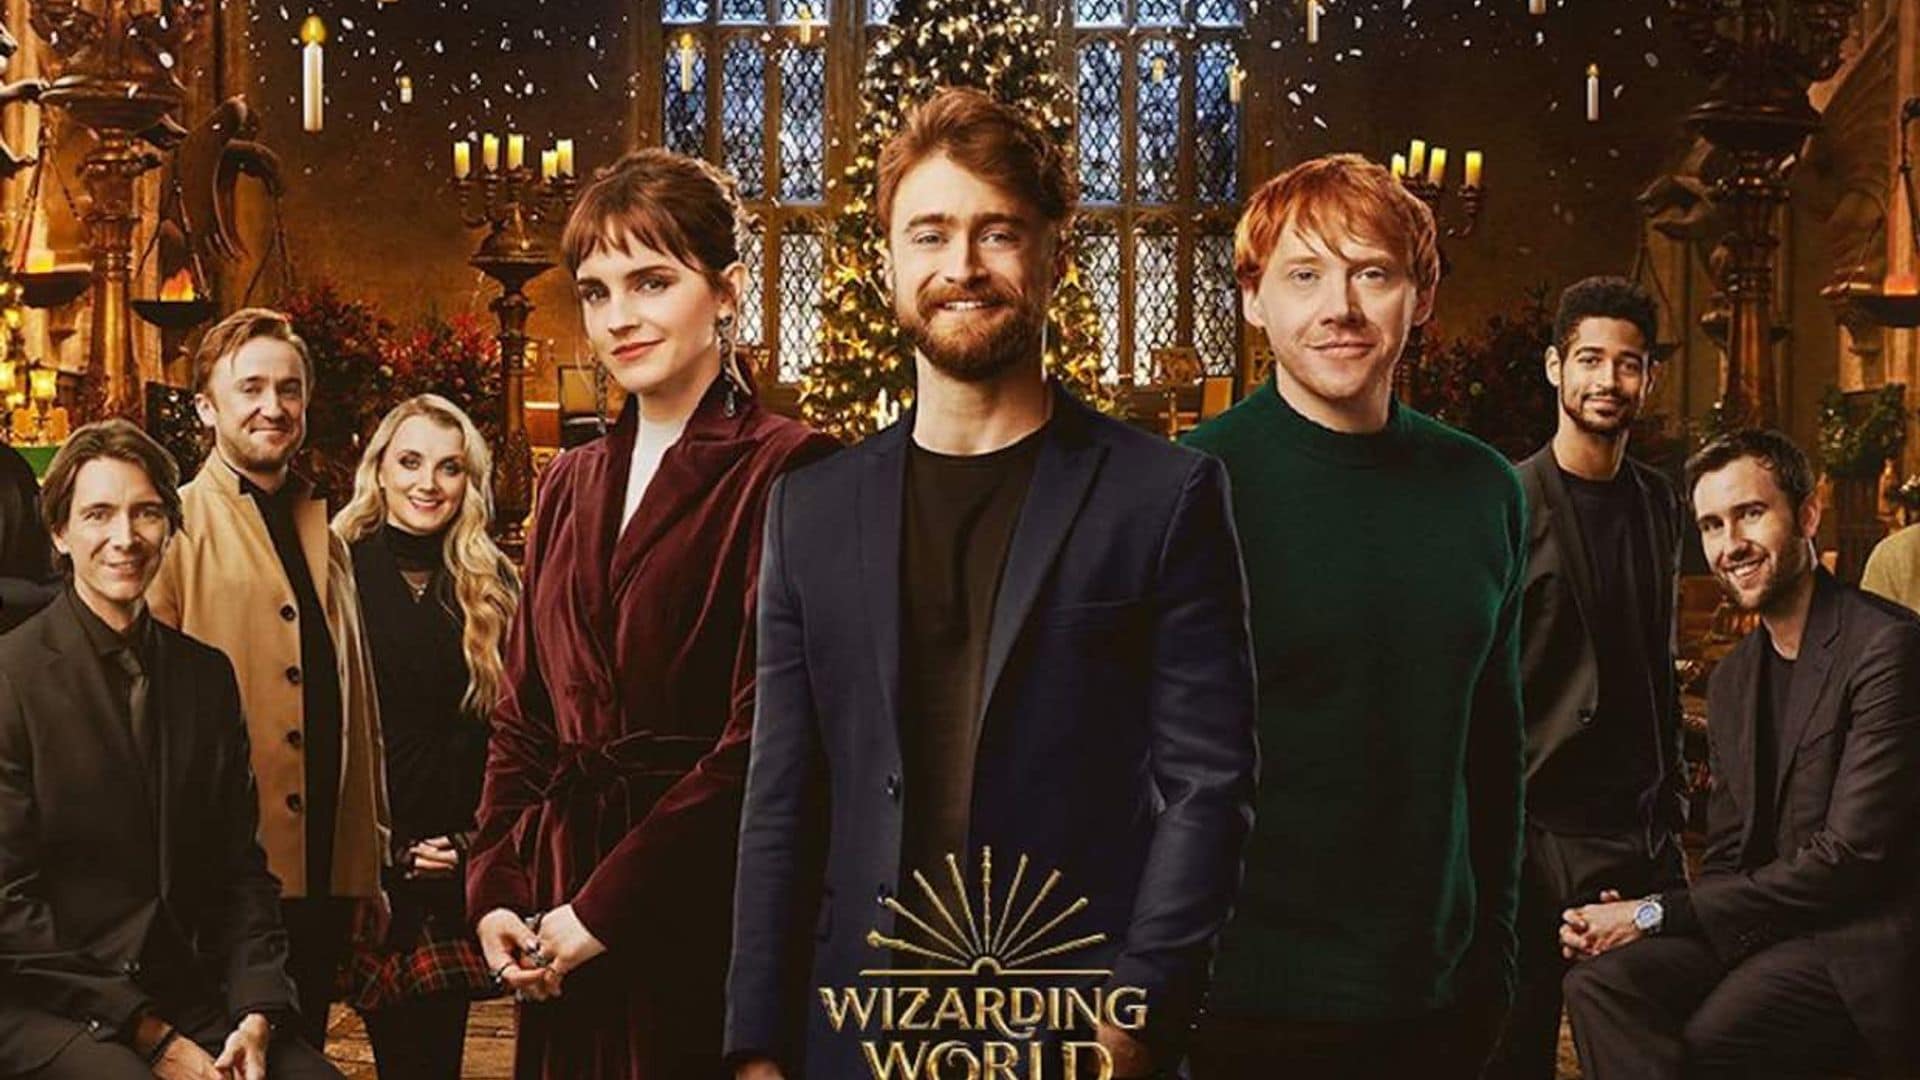 Una carta de amor, un error viral y la escena más incómoda de Emma Watson: los secretos del especial de 'Harry Potter'